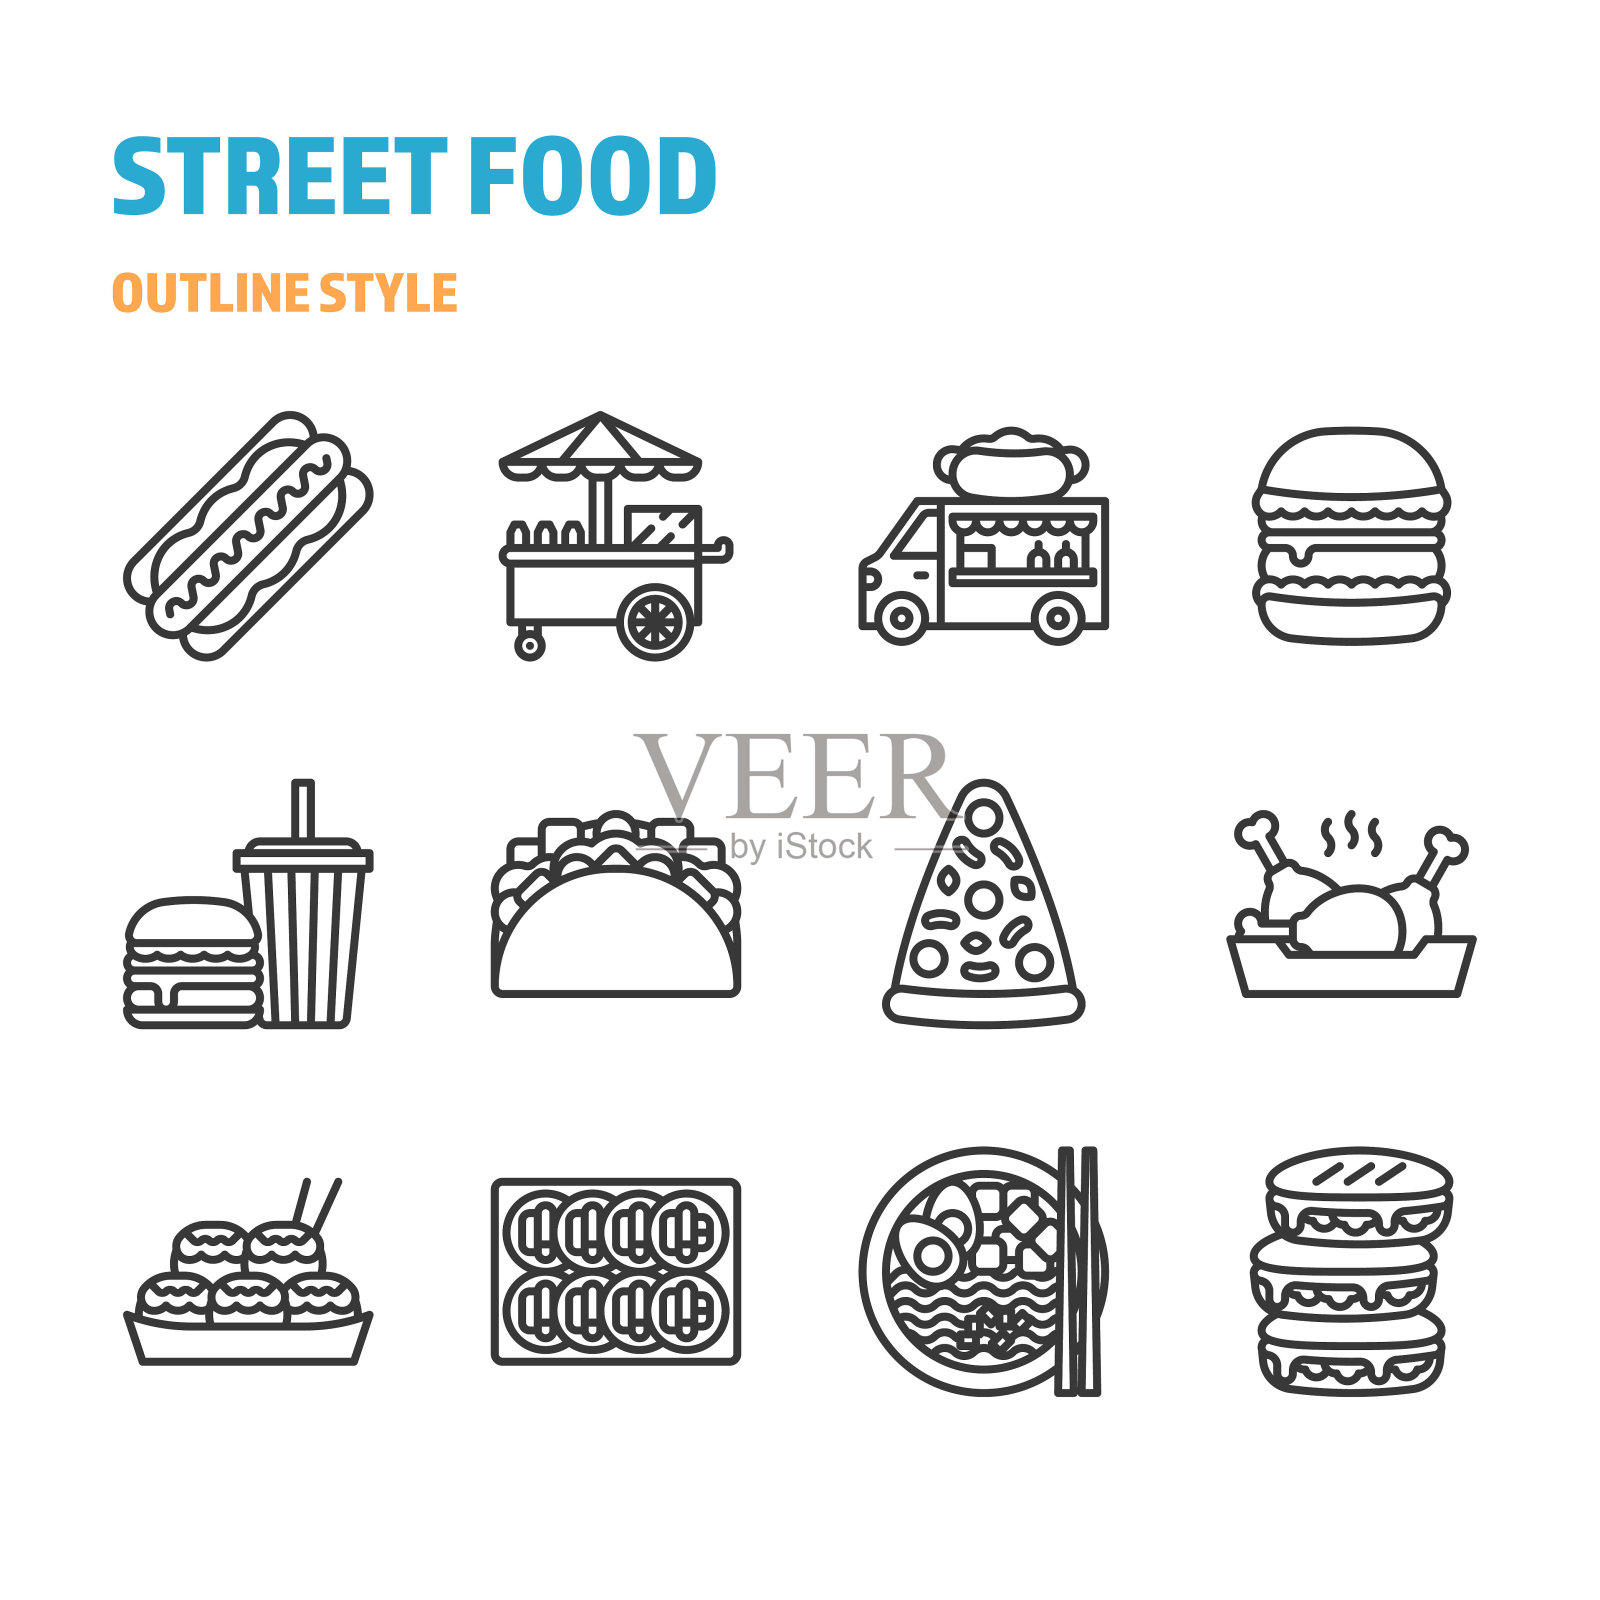 街头小吃的轮廓图标和符号集插画图片素材